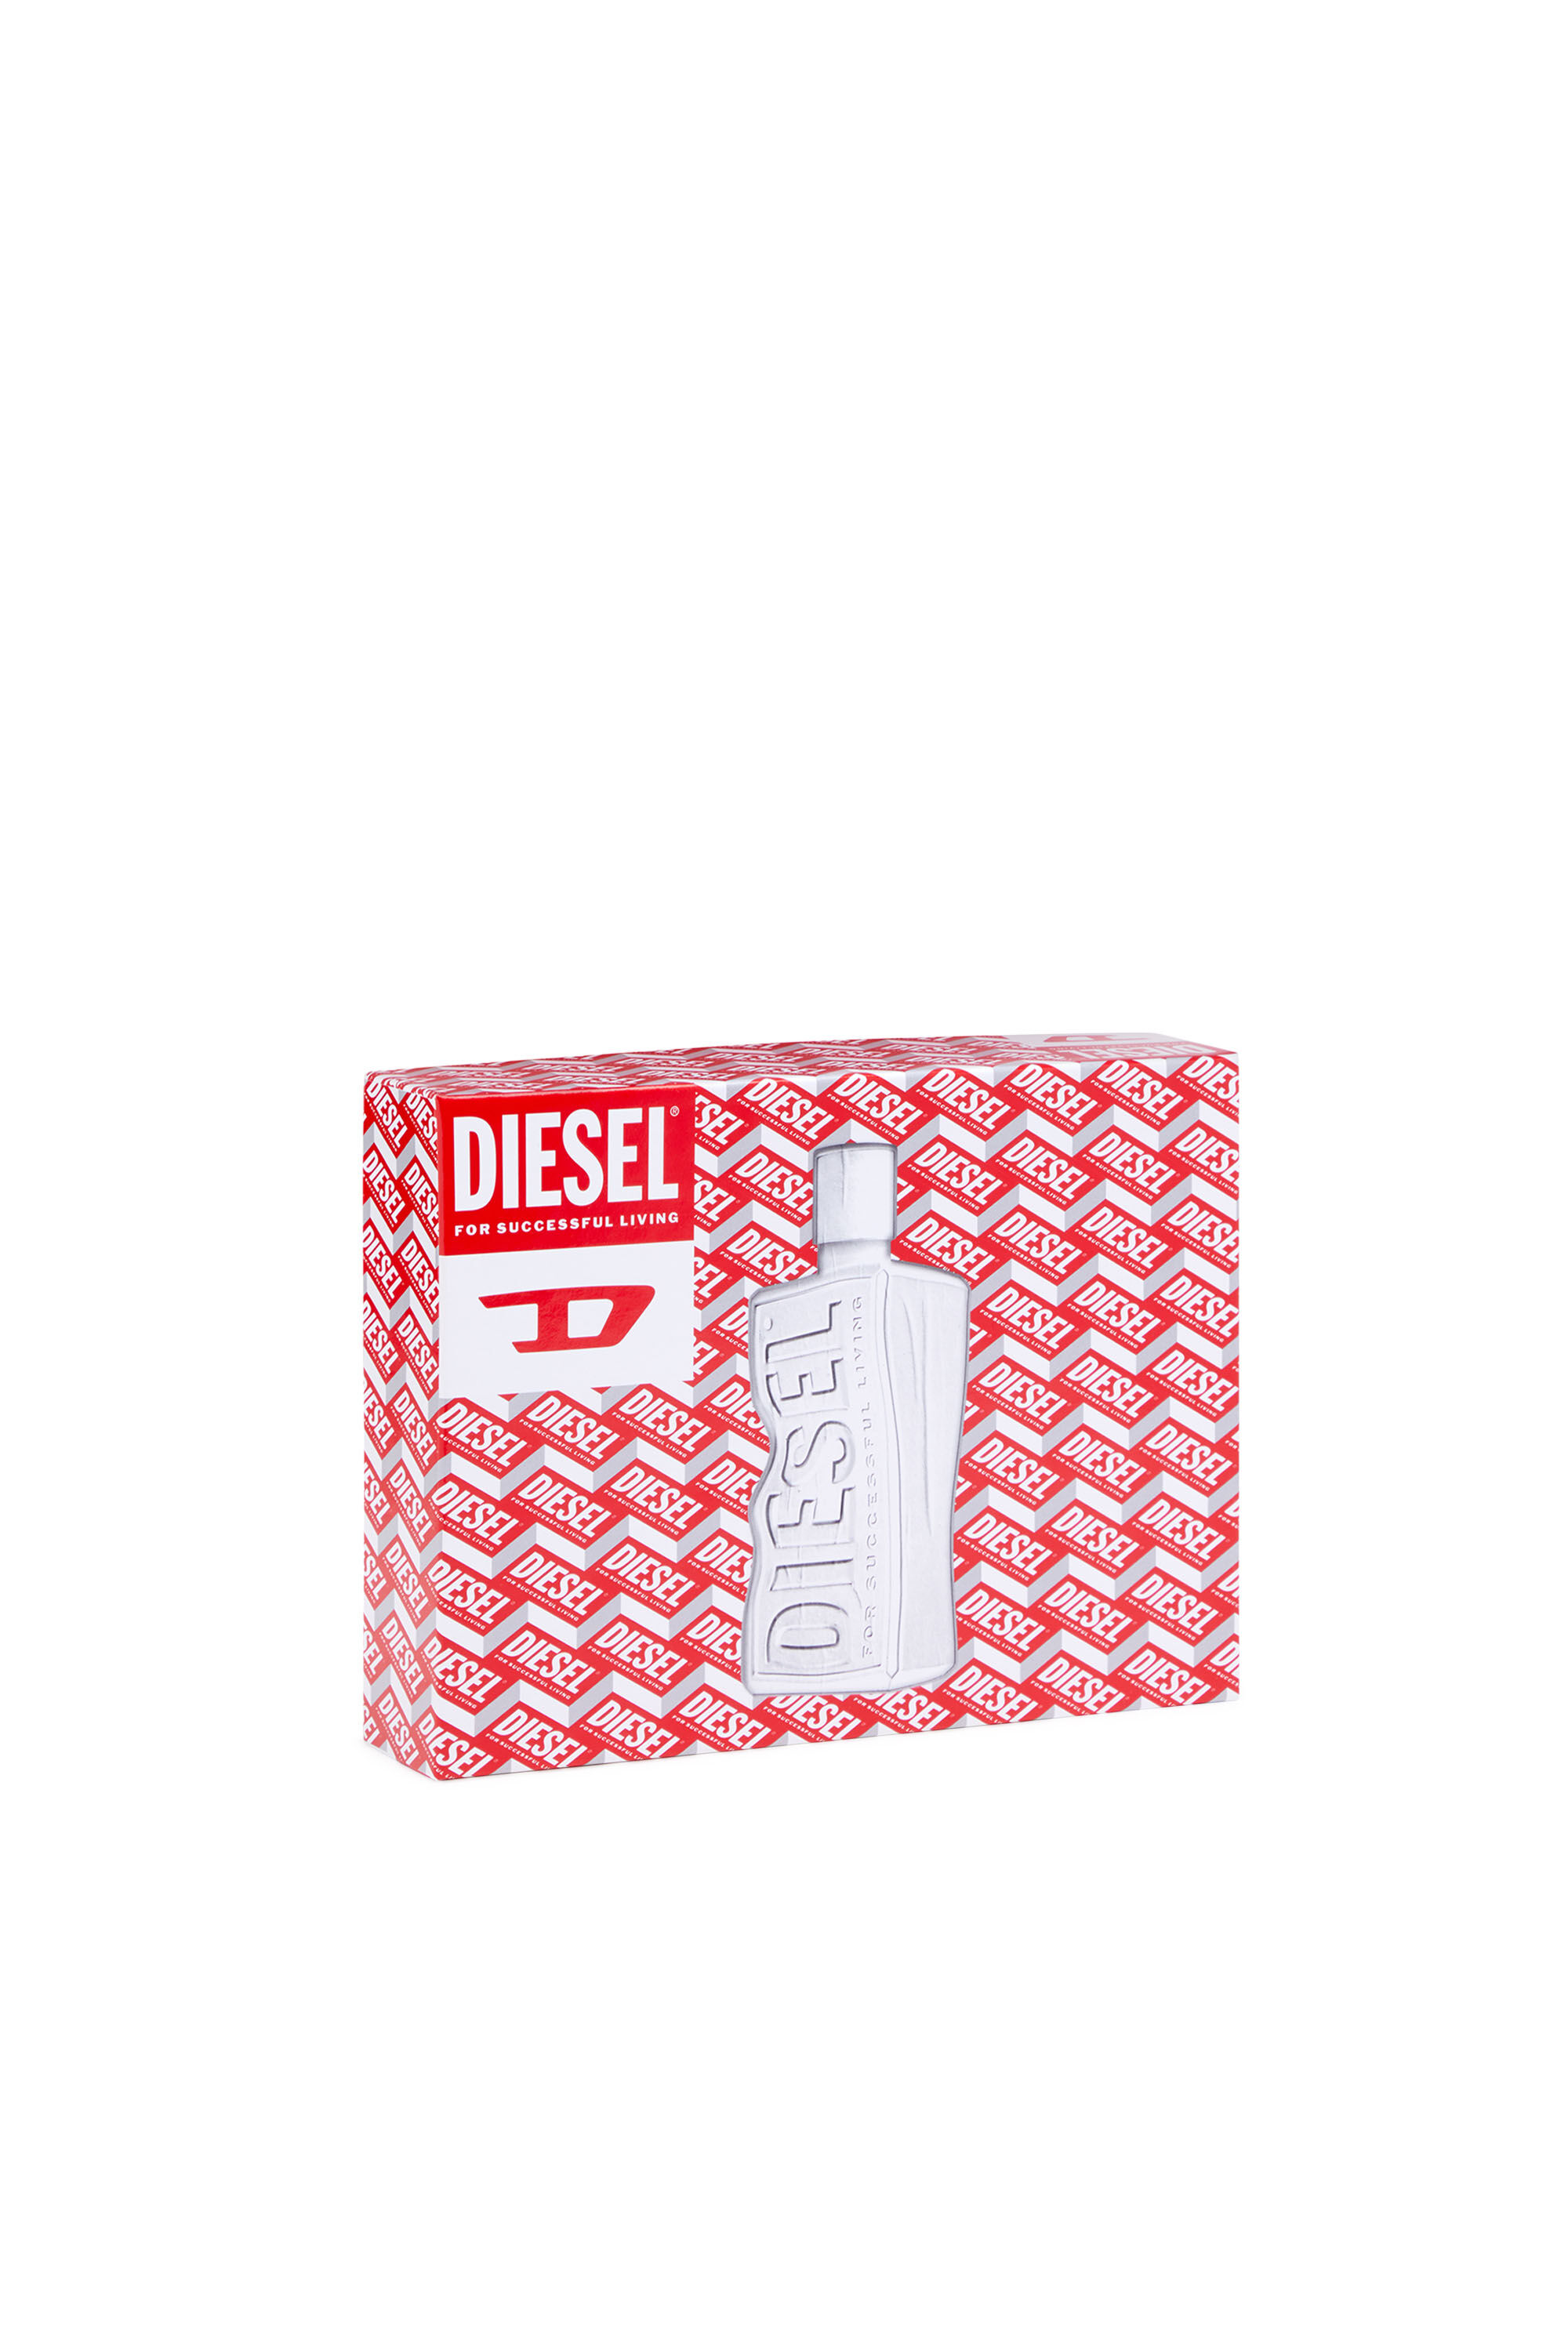 Diesel - D 50ML GIFT SET, Weiß - Image 4